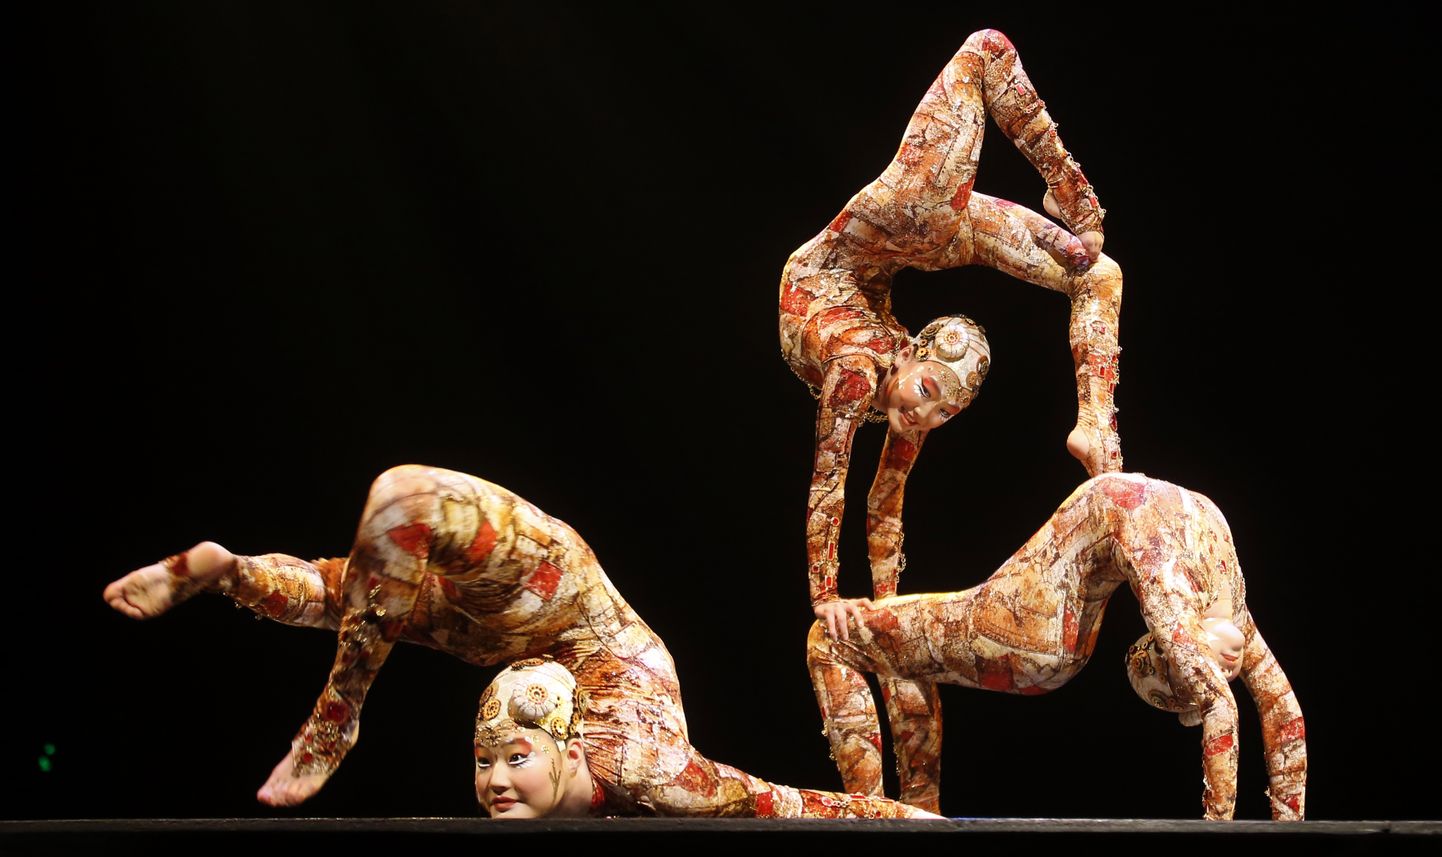 Kondiväänajad Cirque du Soleil etendusel. Pilt on illustreeriv.